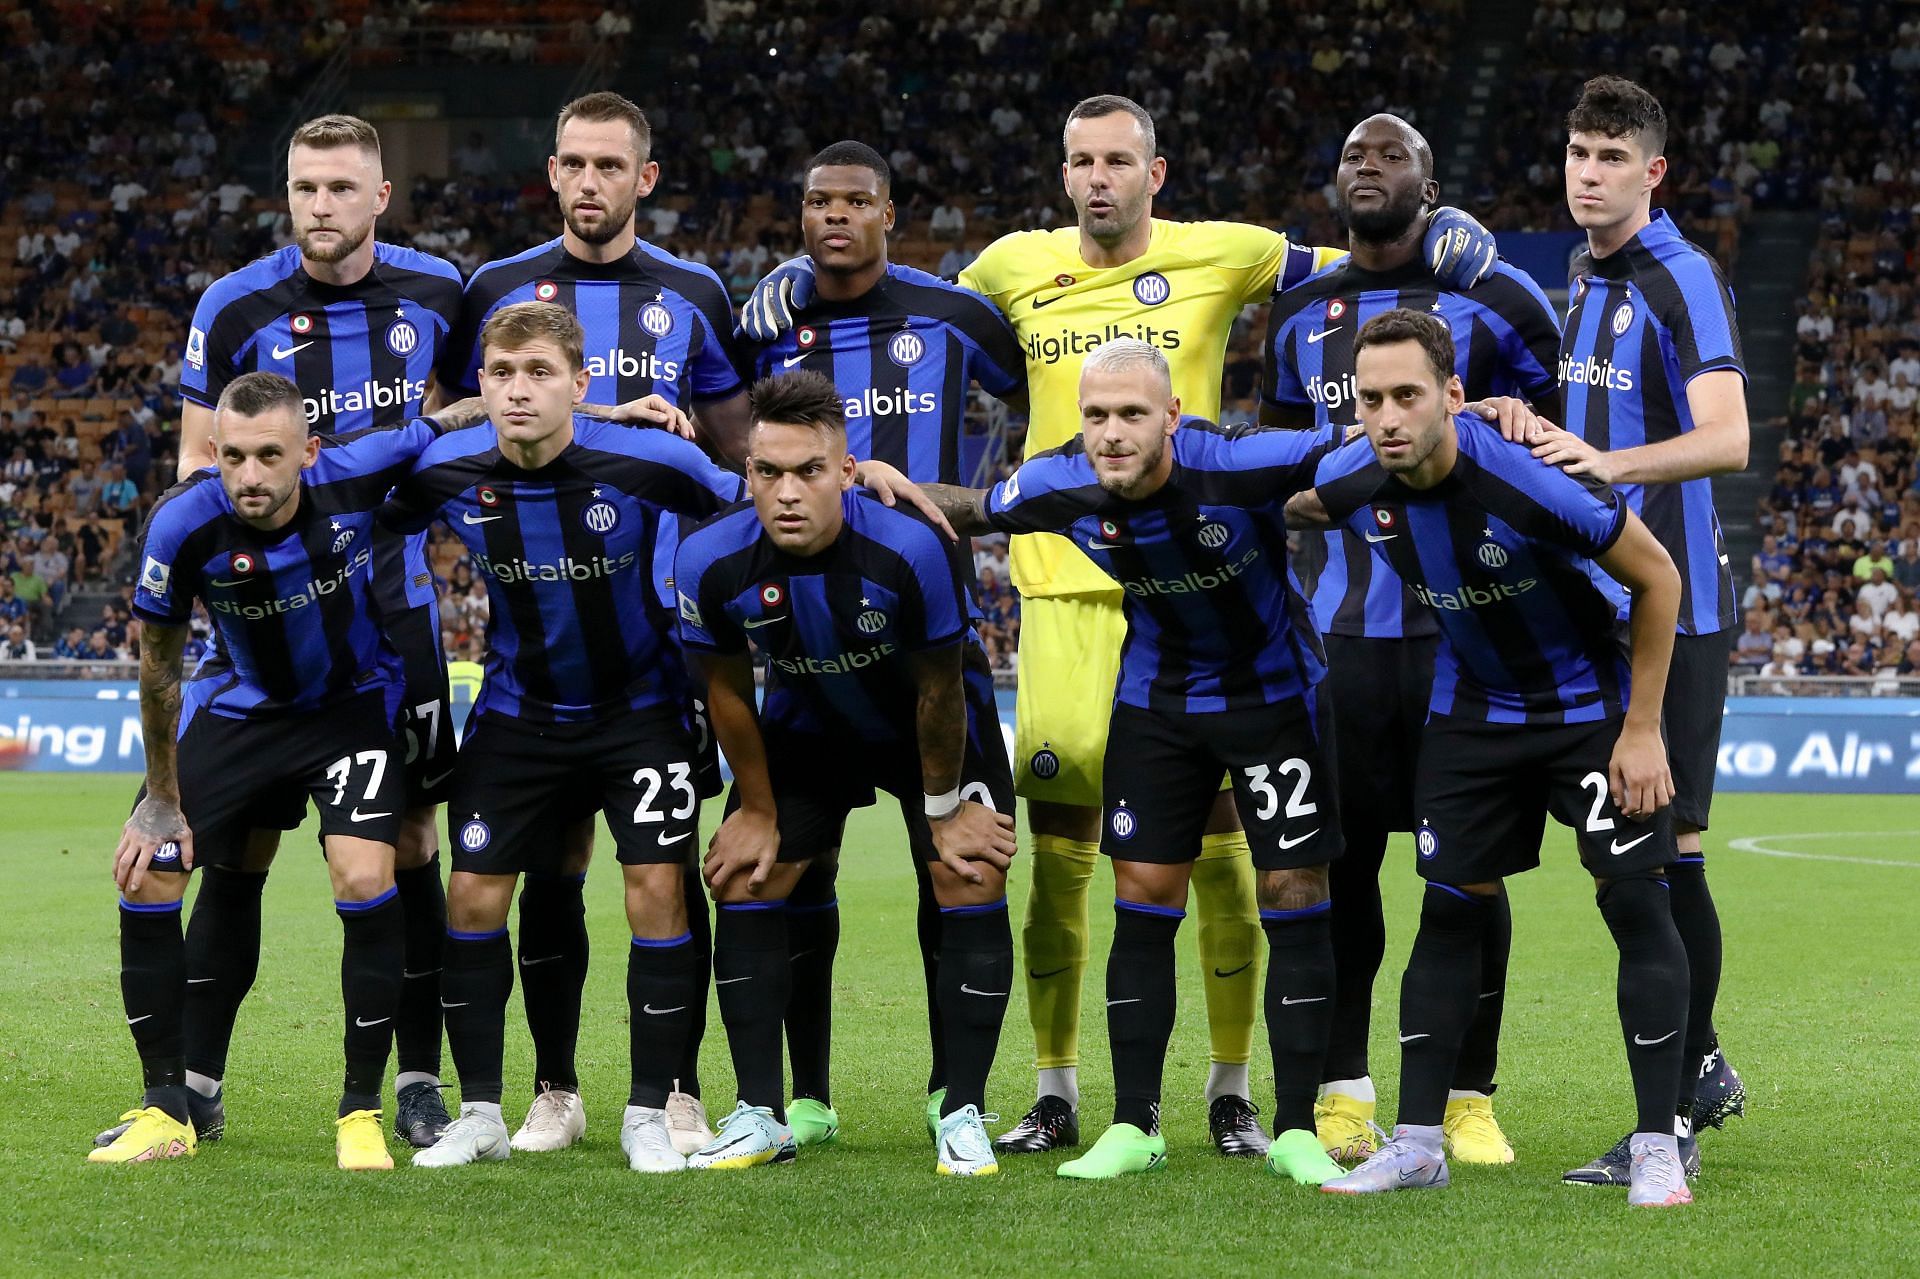 Inter have brought Lukaku back